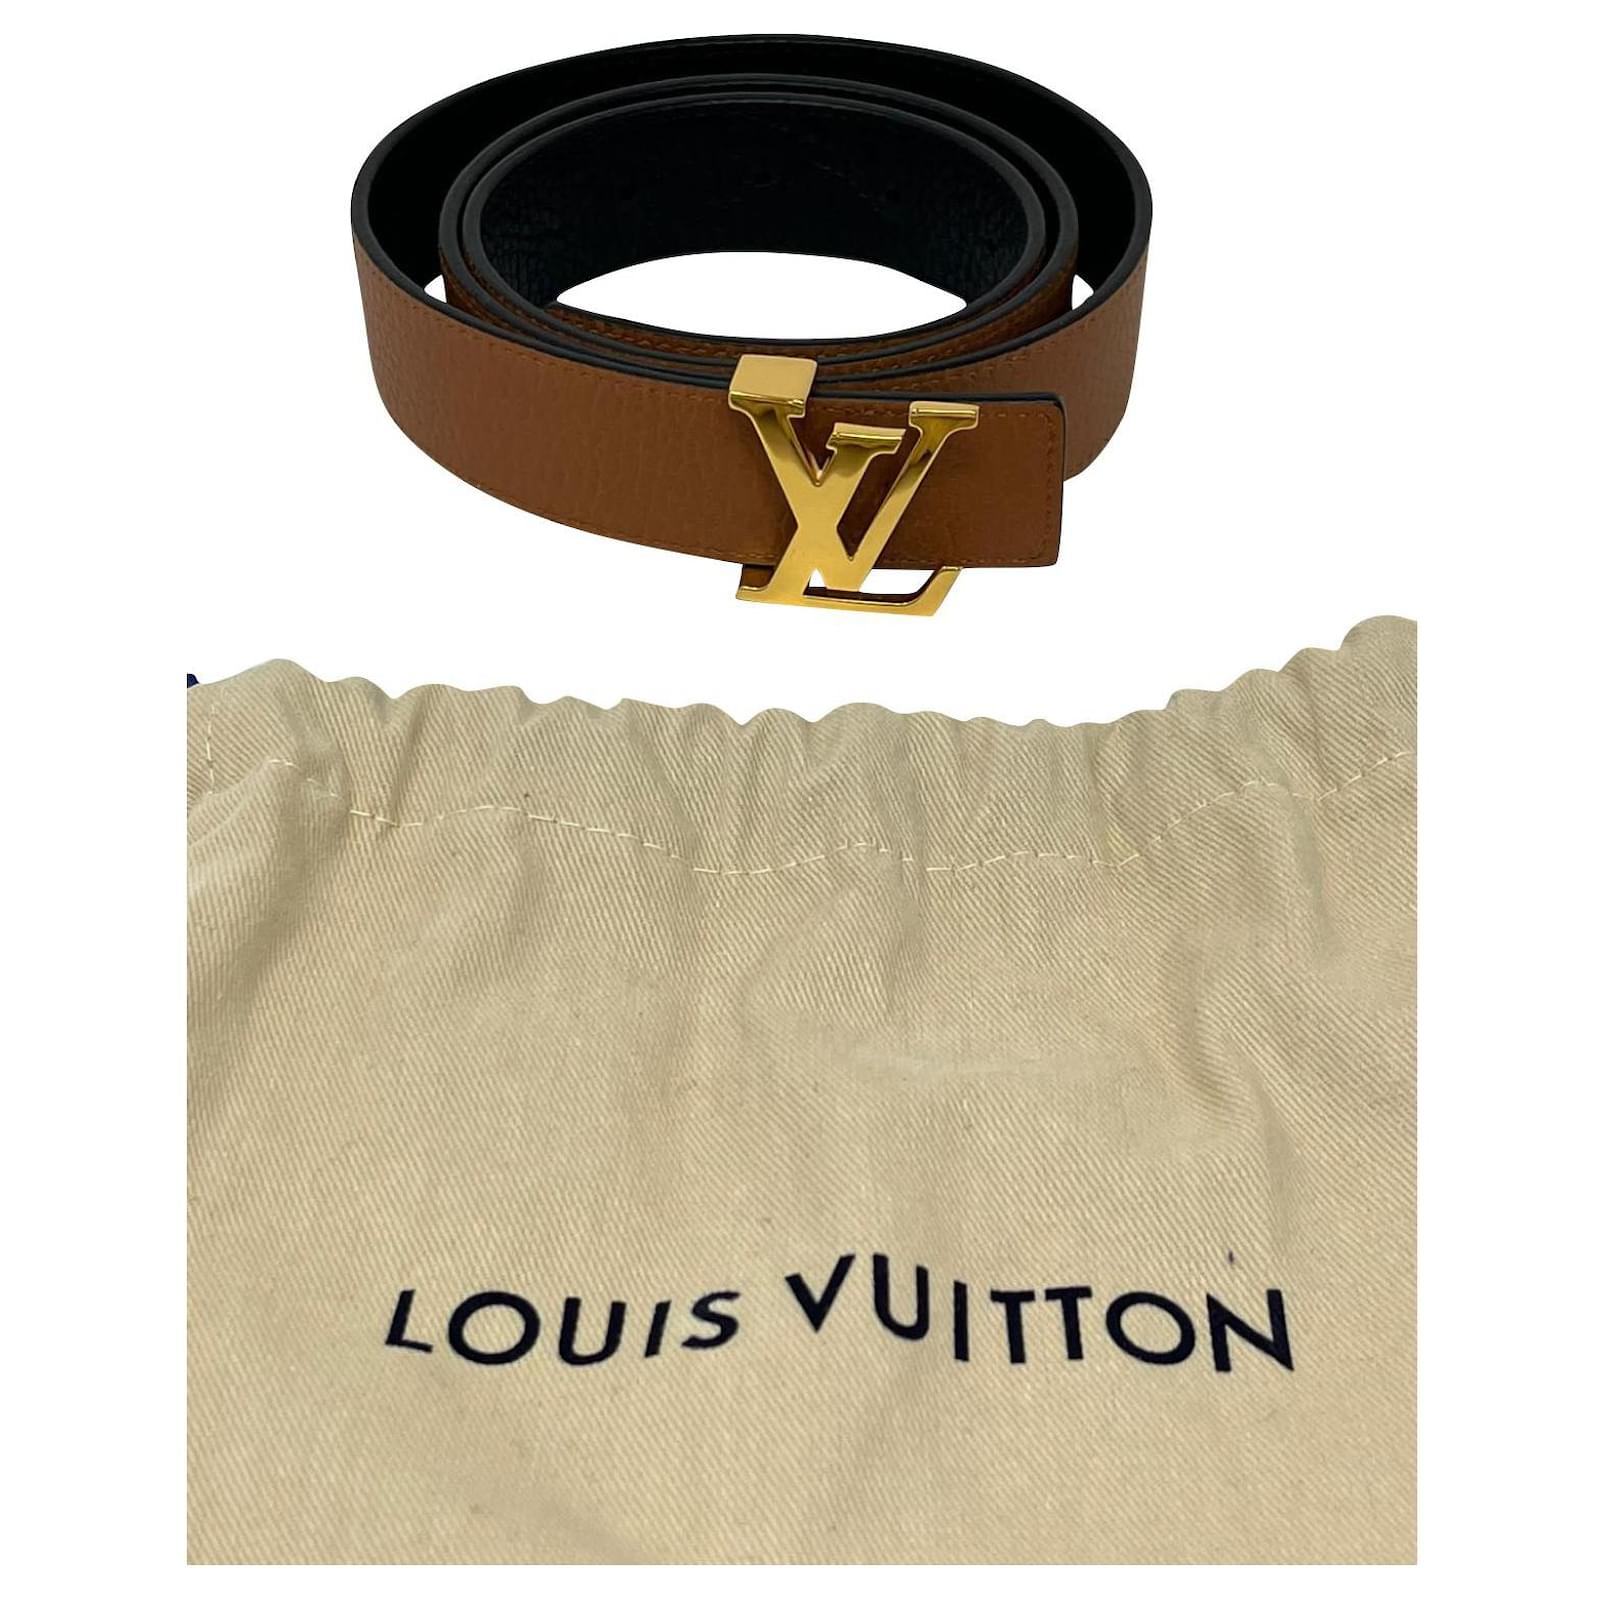 Louis Vuitton Cinto de Iniciais LV 30 REVERSÍVEL MM Preto Castanho